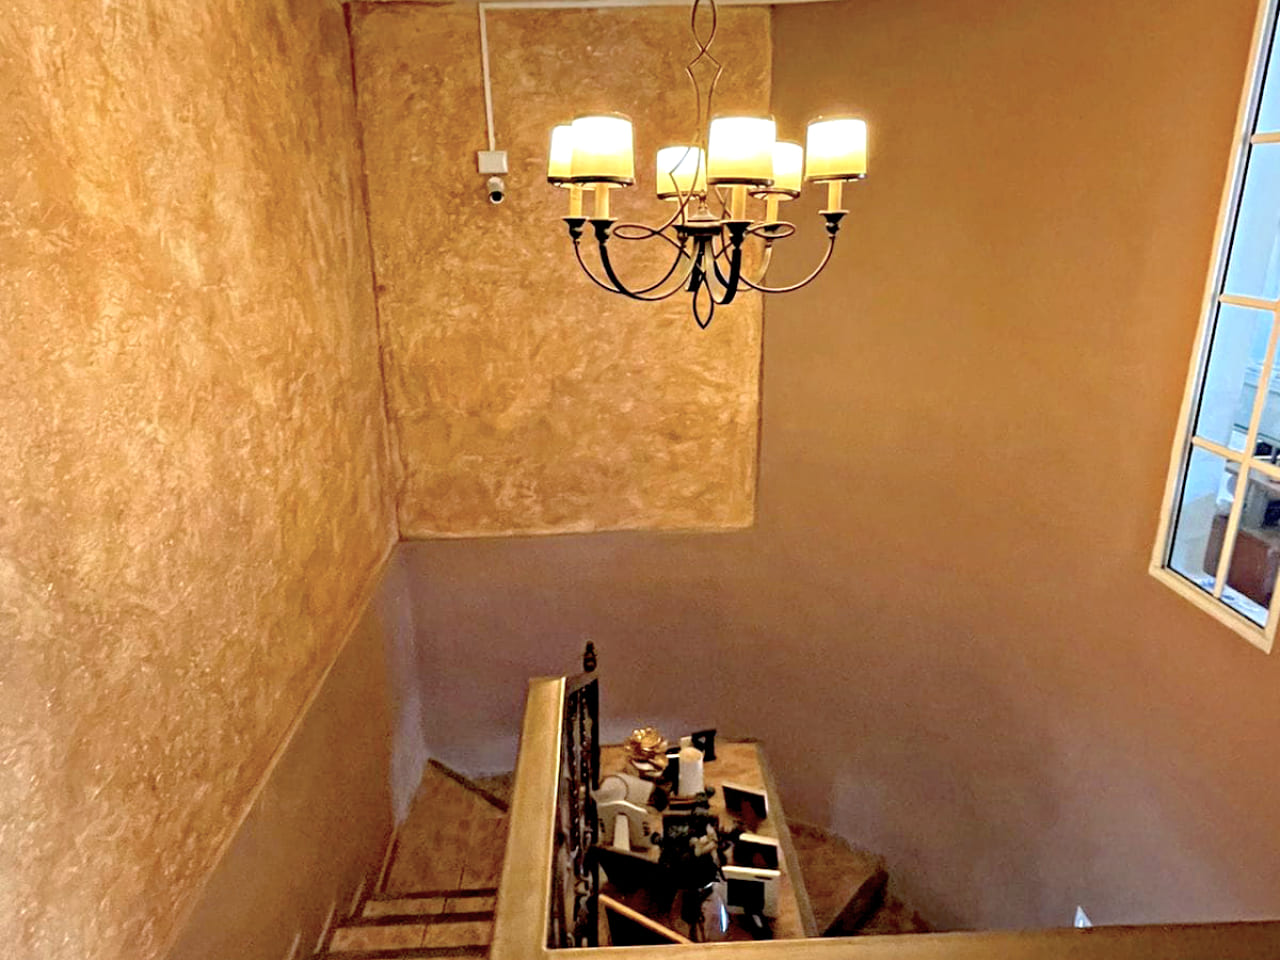 Escaleras que brindan acceso al segundo piso, con un candelabro que ilumina bellamente la zona, con una pequeña ventana al exterior.